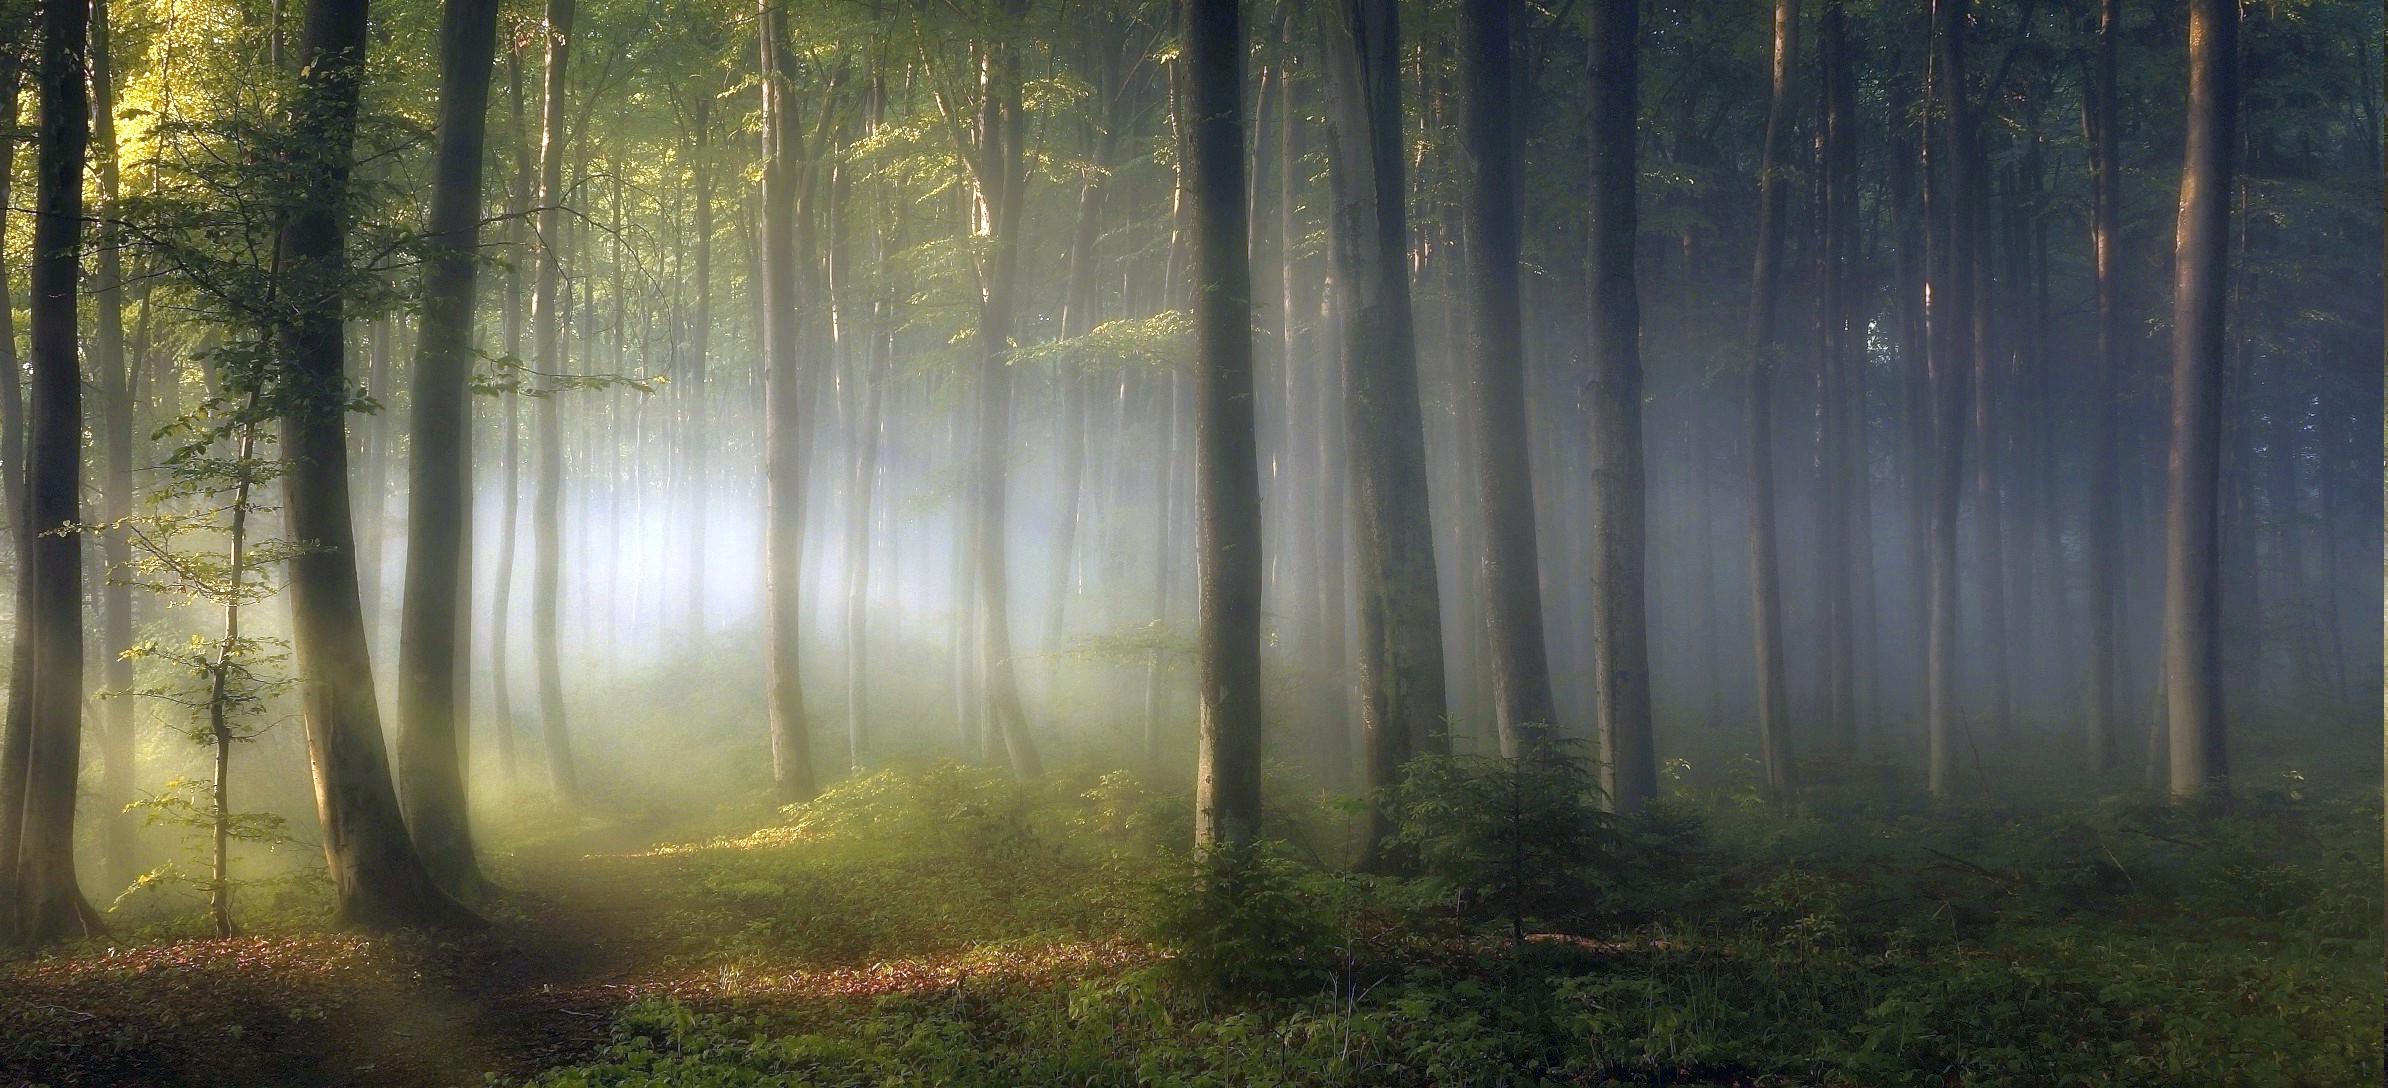 morning, Forest, Shrubs, Sunrise, Trees, Path, Mist, Leaves, Green